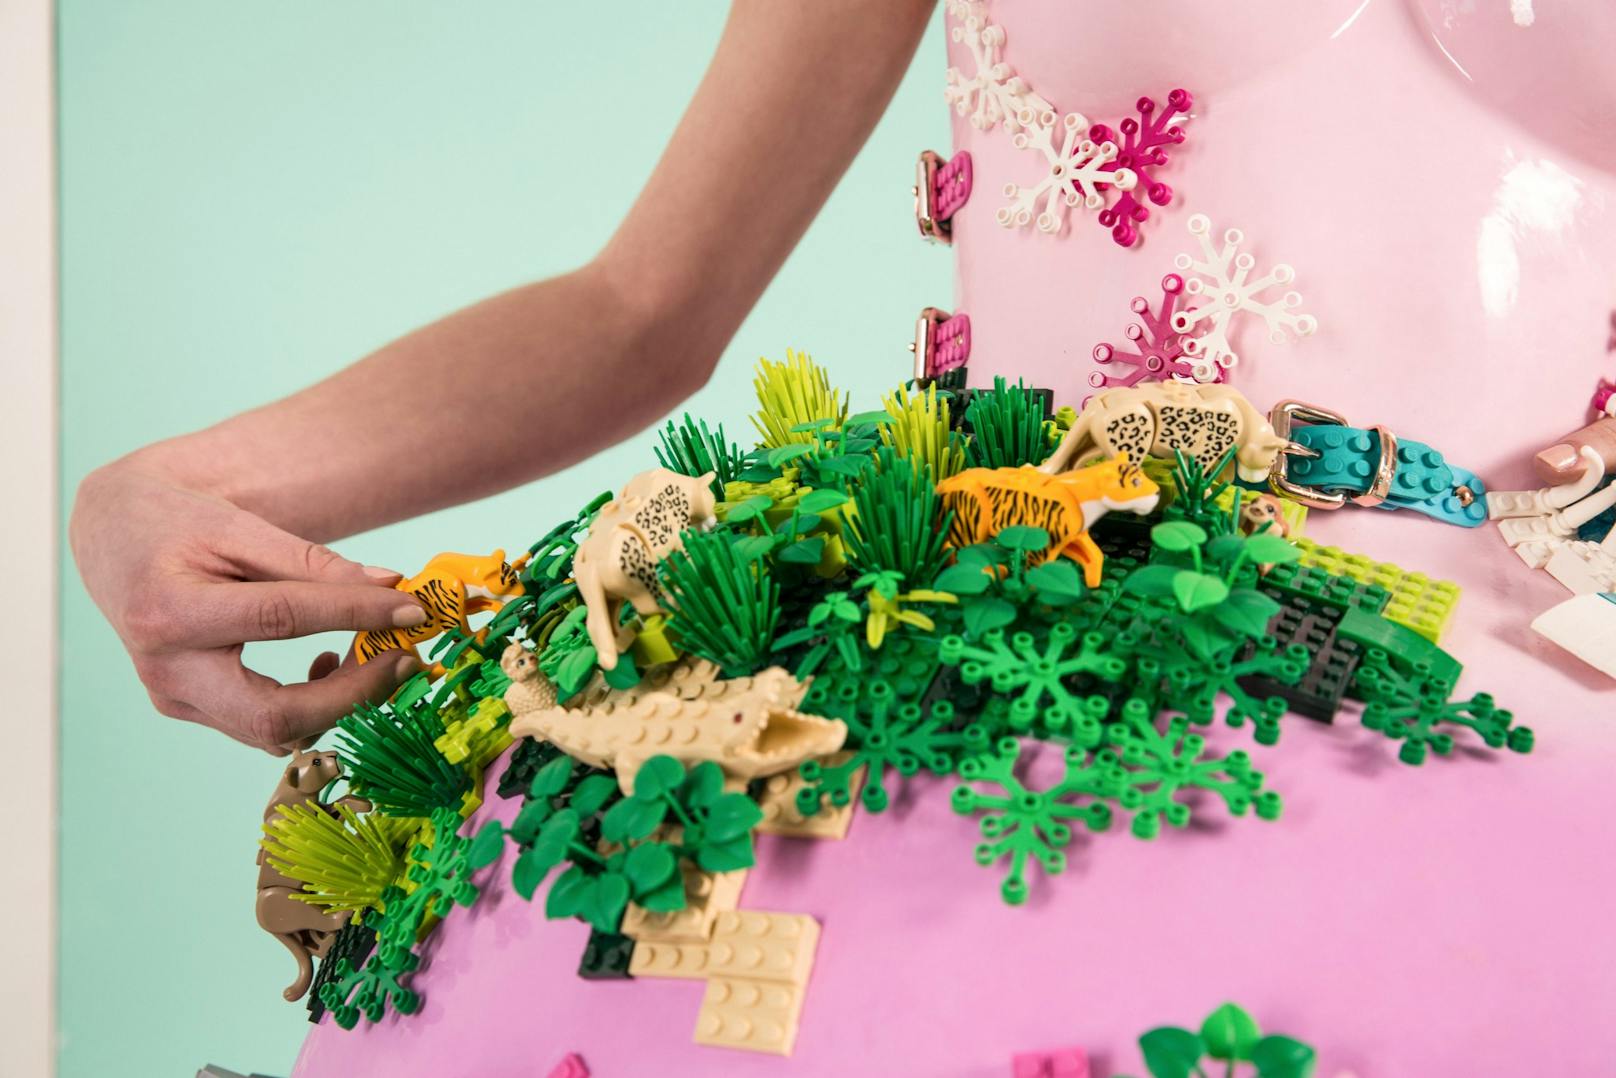 Für die neue Lego-Kampagne "Rebuild the World" entwirft Marina Hoermanseder ihre ganz persönliche Interpretation einer Welt von morgen...